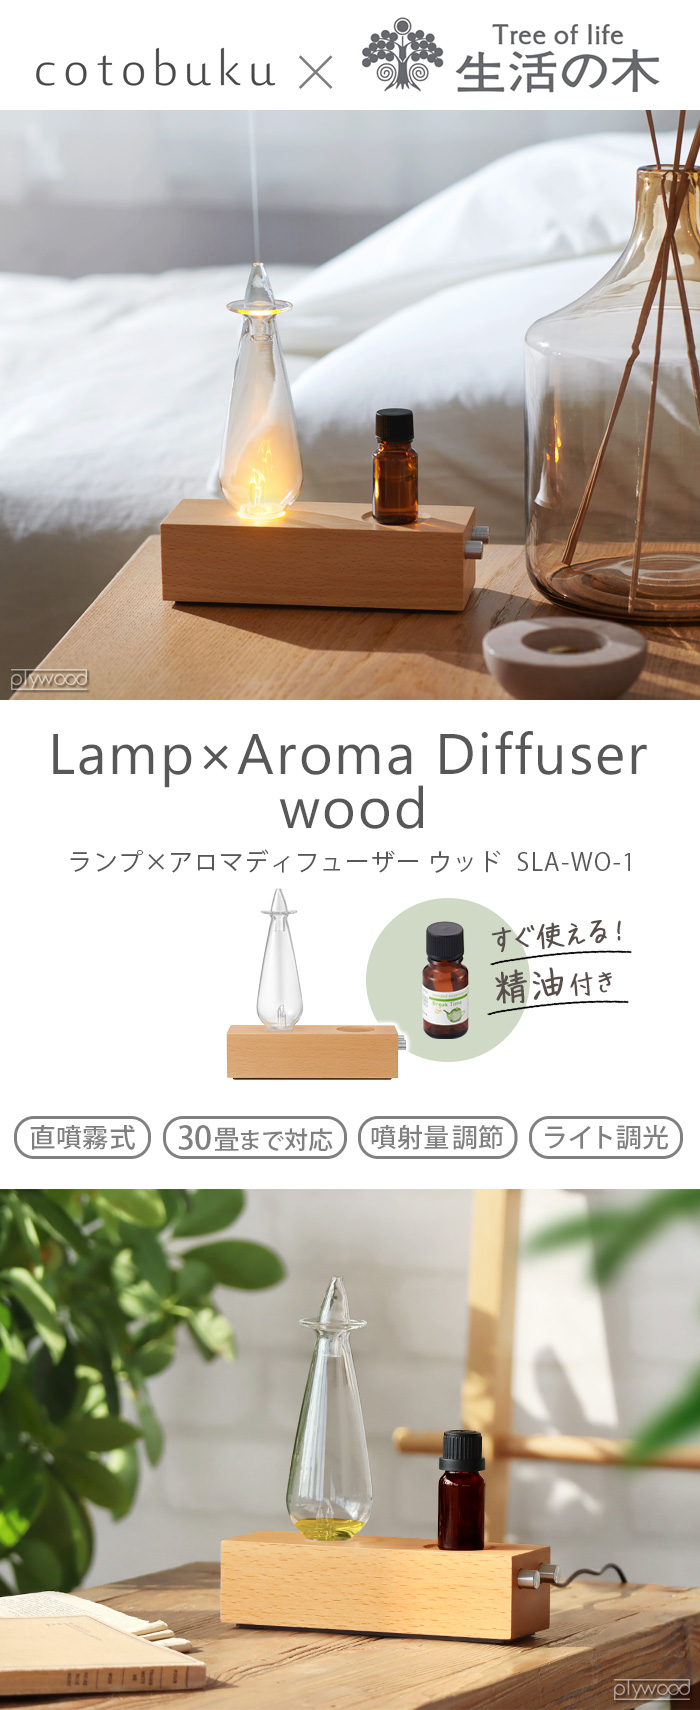 【選べる特典付】アロマディフューザー 水なし おしゃれ cotobuku×生活の木 Lamp×Aroma Diffuser SLA-WO-1 コトブク  ランプ×アロマディフューザー ウッド